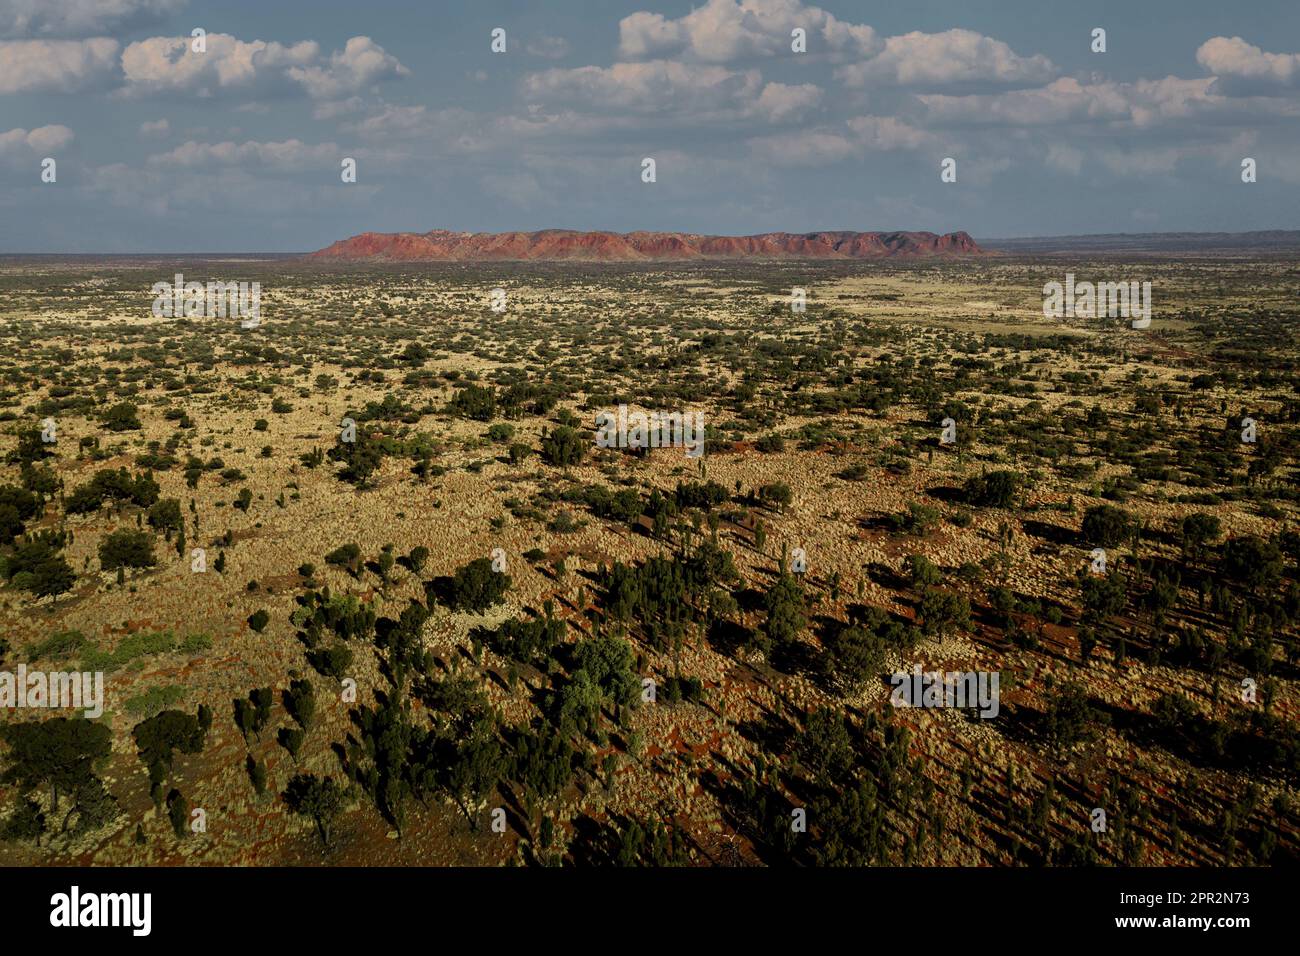 Photo aérienne du cratère de Tnorala (Gosse Bluff) dans les plaines désertiques de l'Australie centrale. Banque D'Images